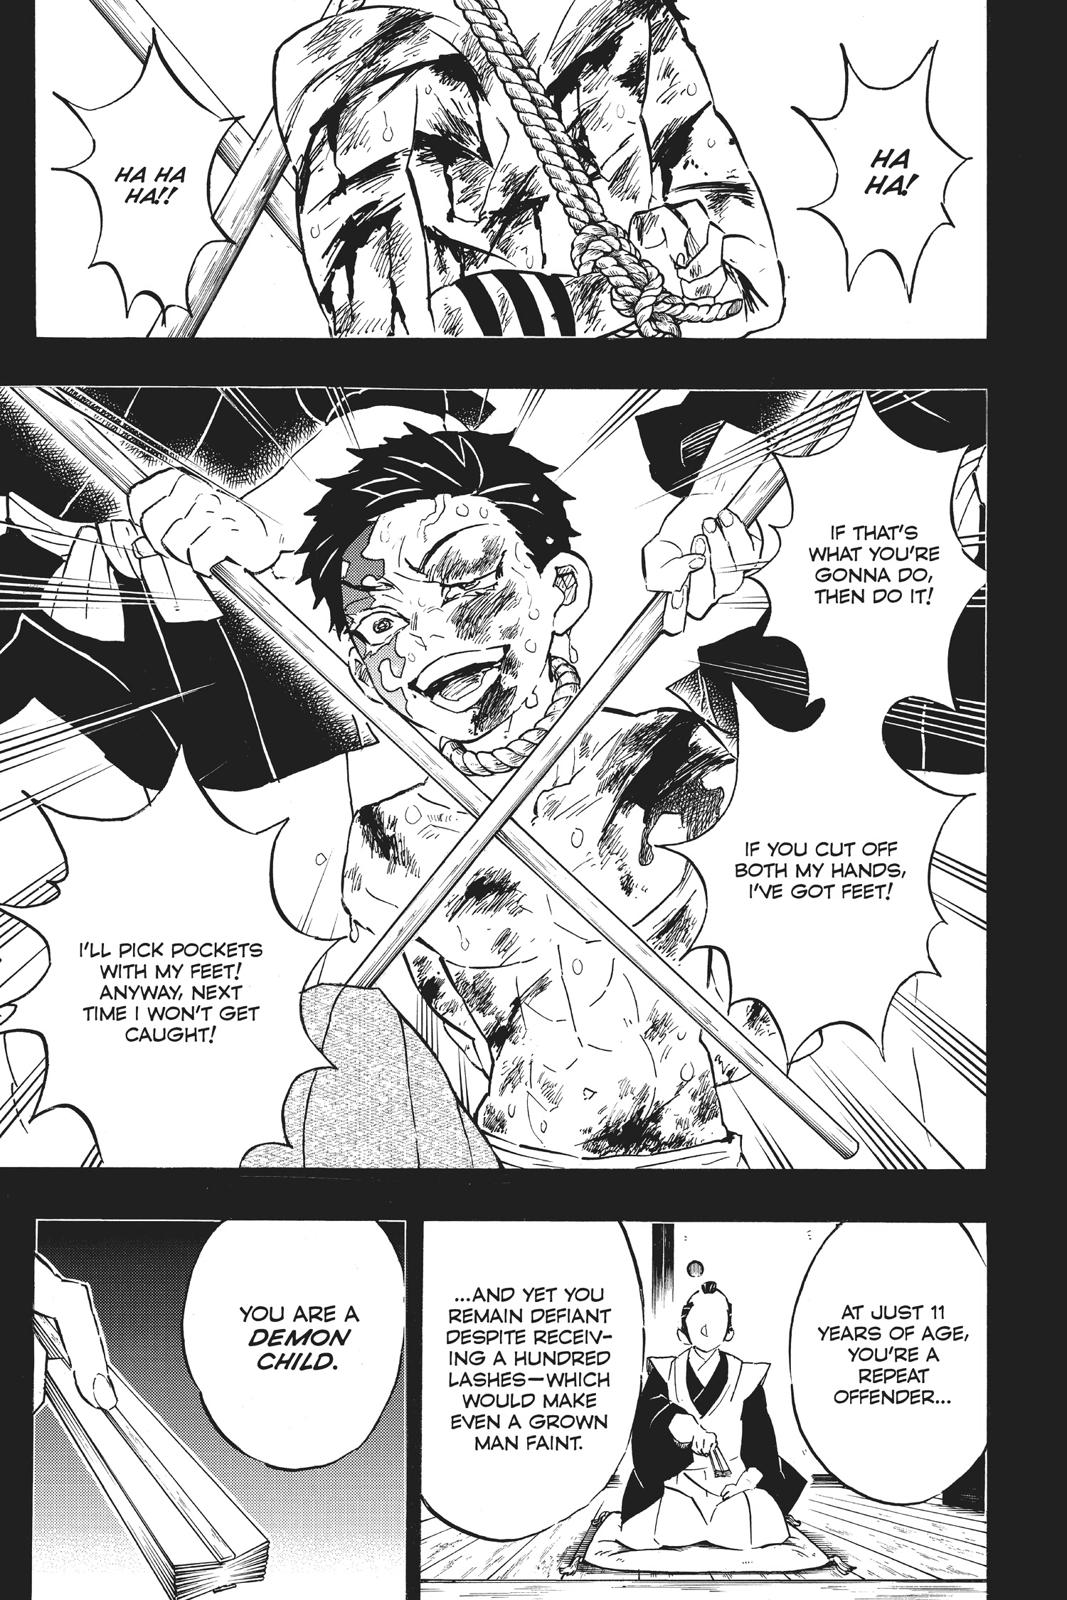 Demon Slayer Manga Manga Chapter - 154 - image 7